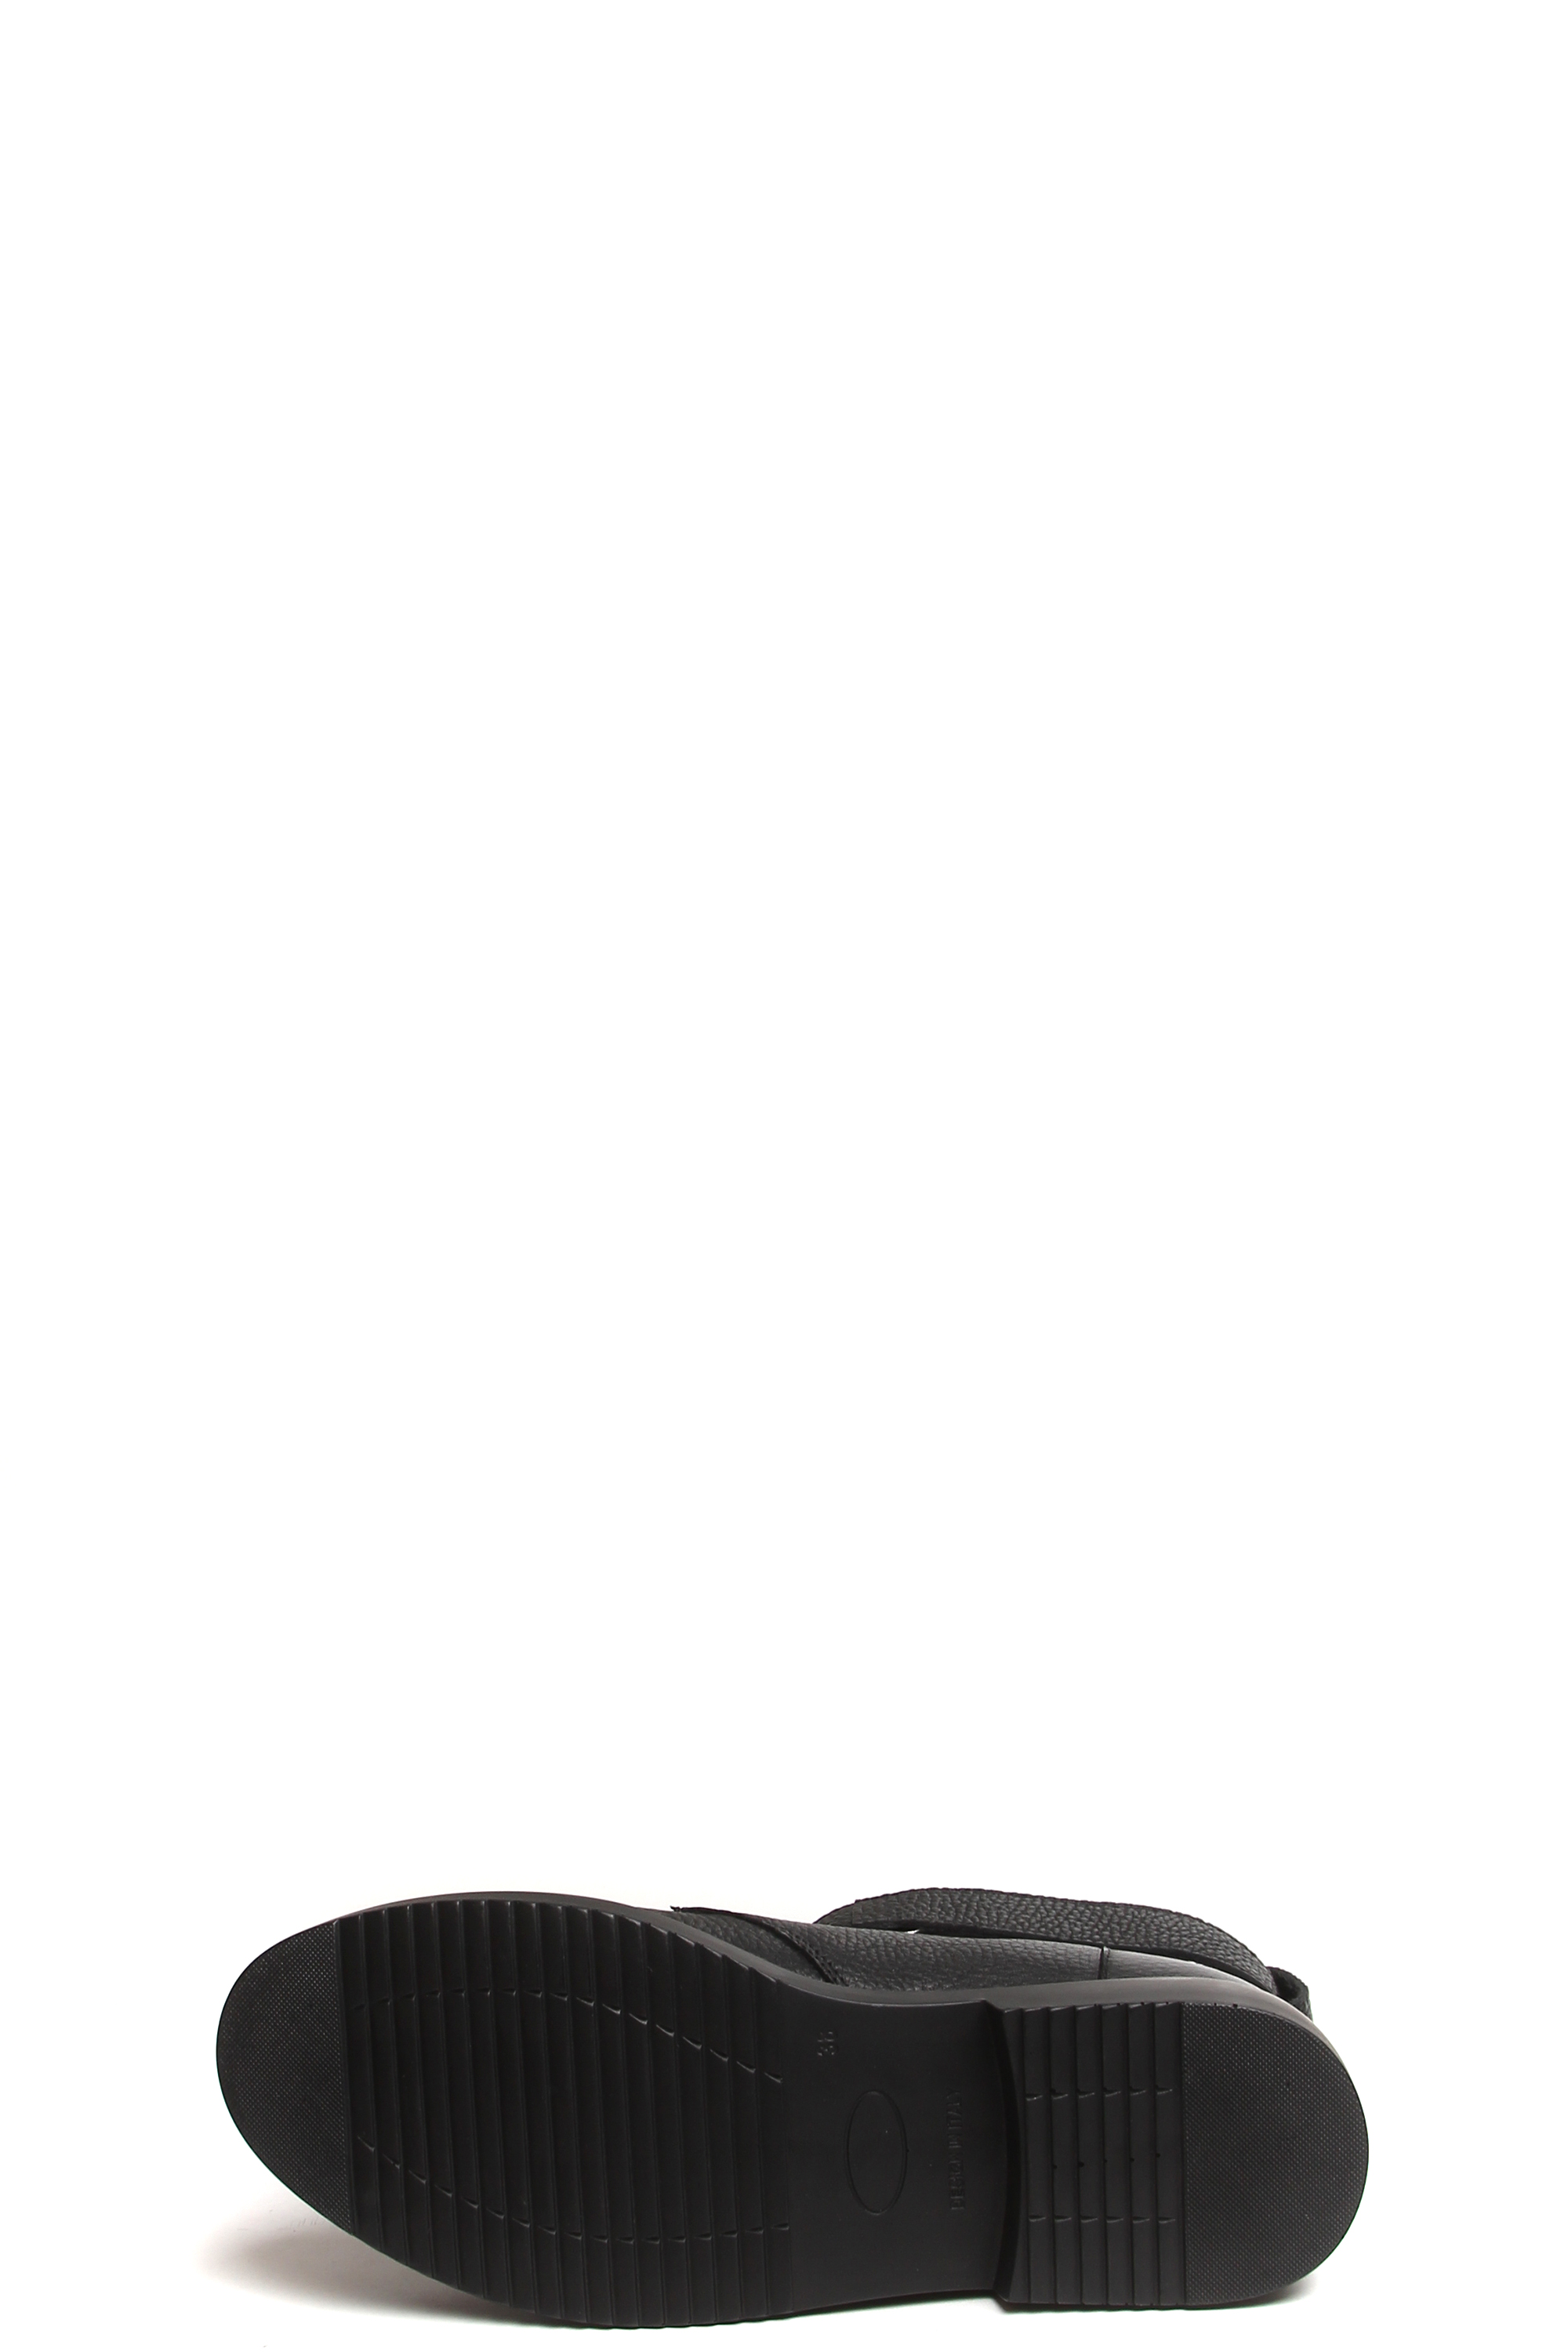 Ботинки MILANA 182545-2-110V черный - купить 19990